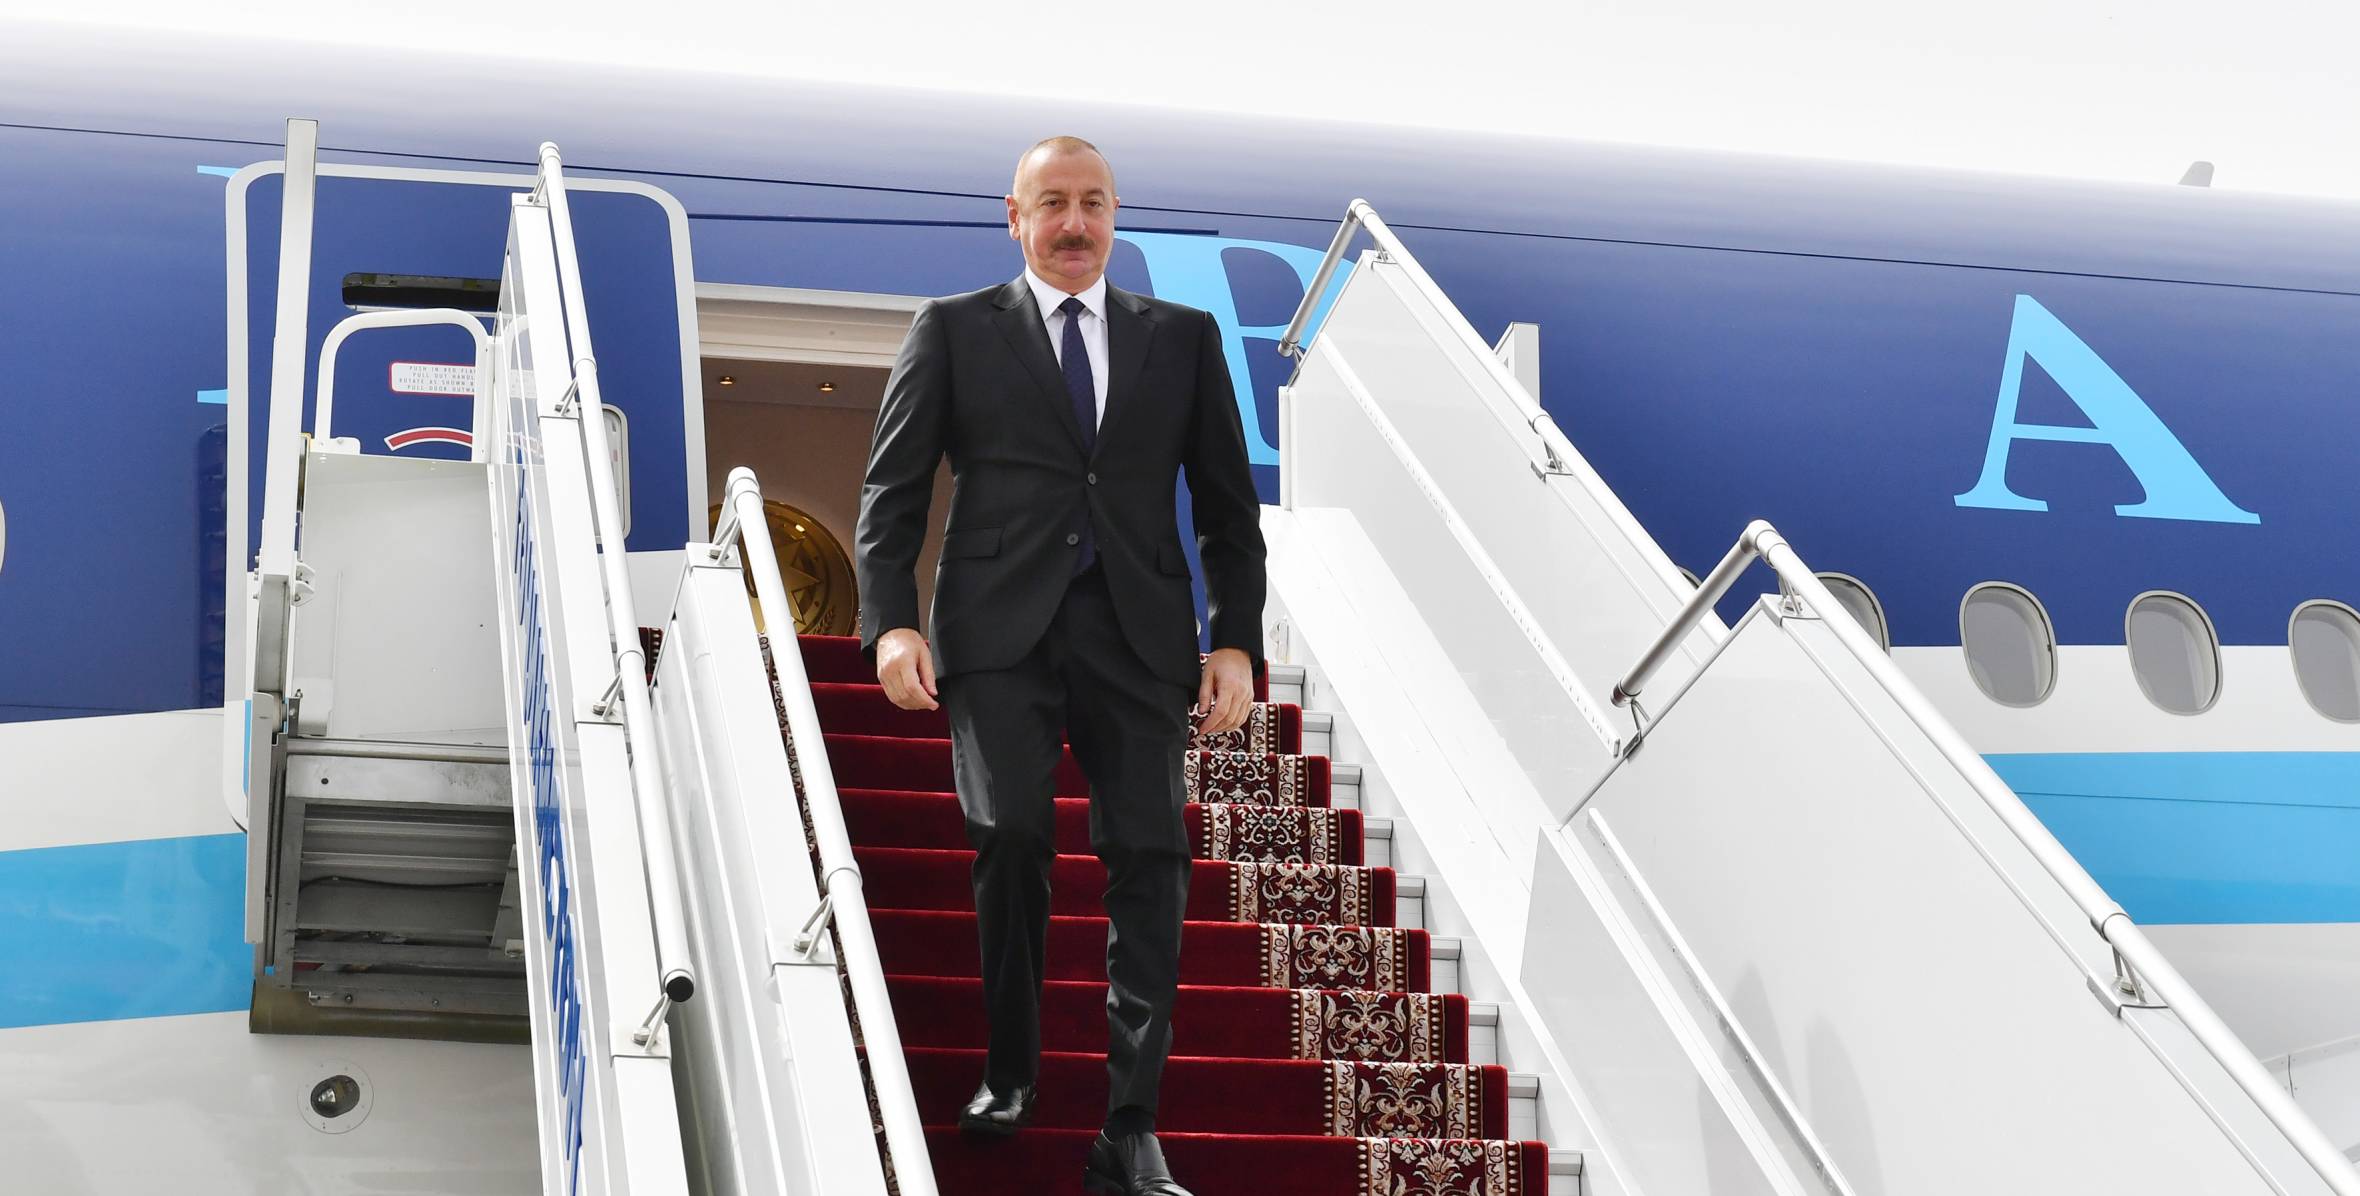 Ilham Aliyev arrived in Tajikistan for visit